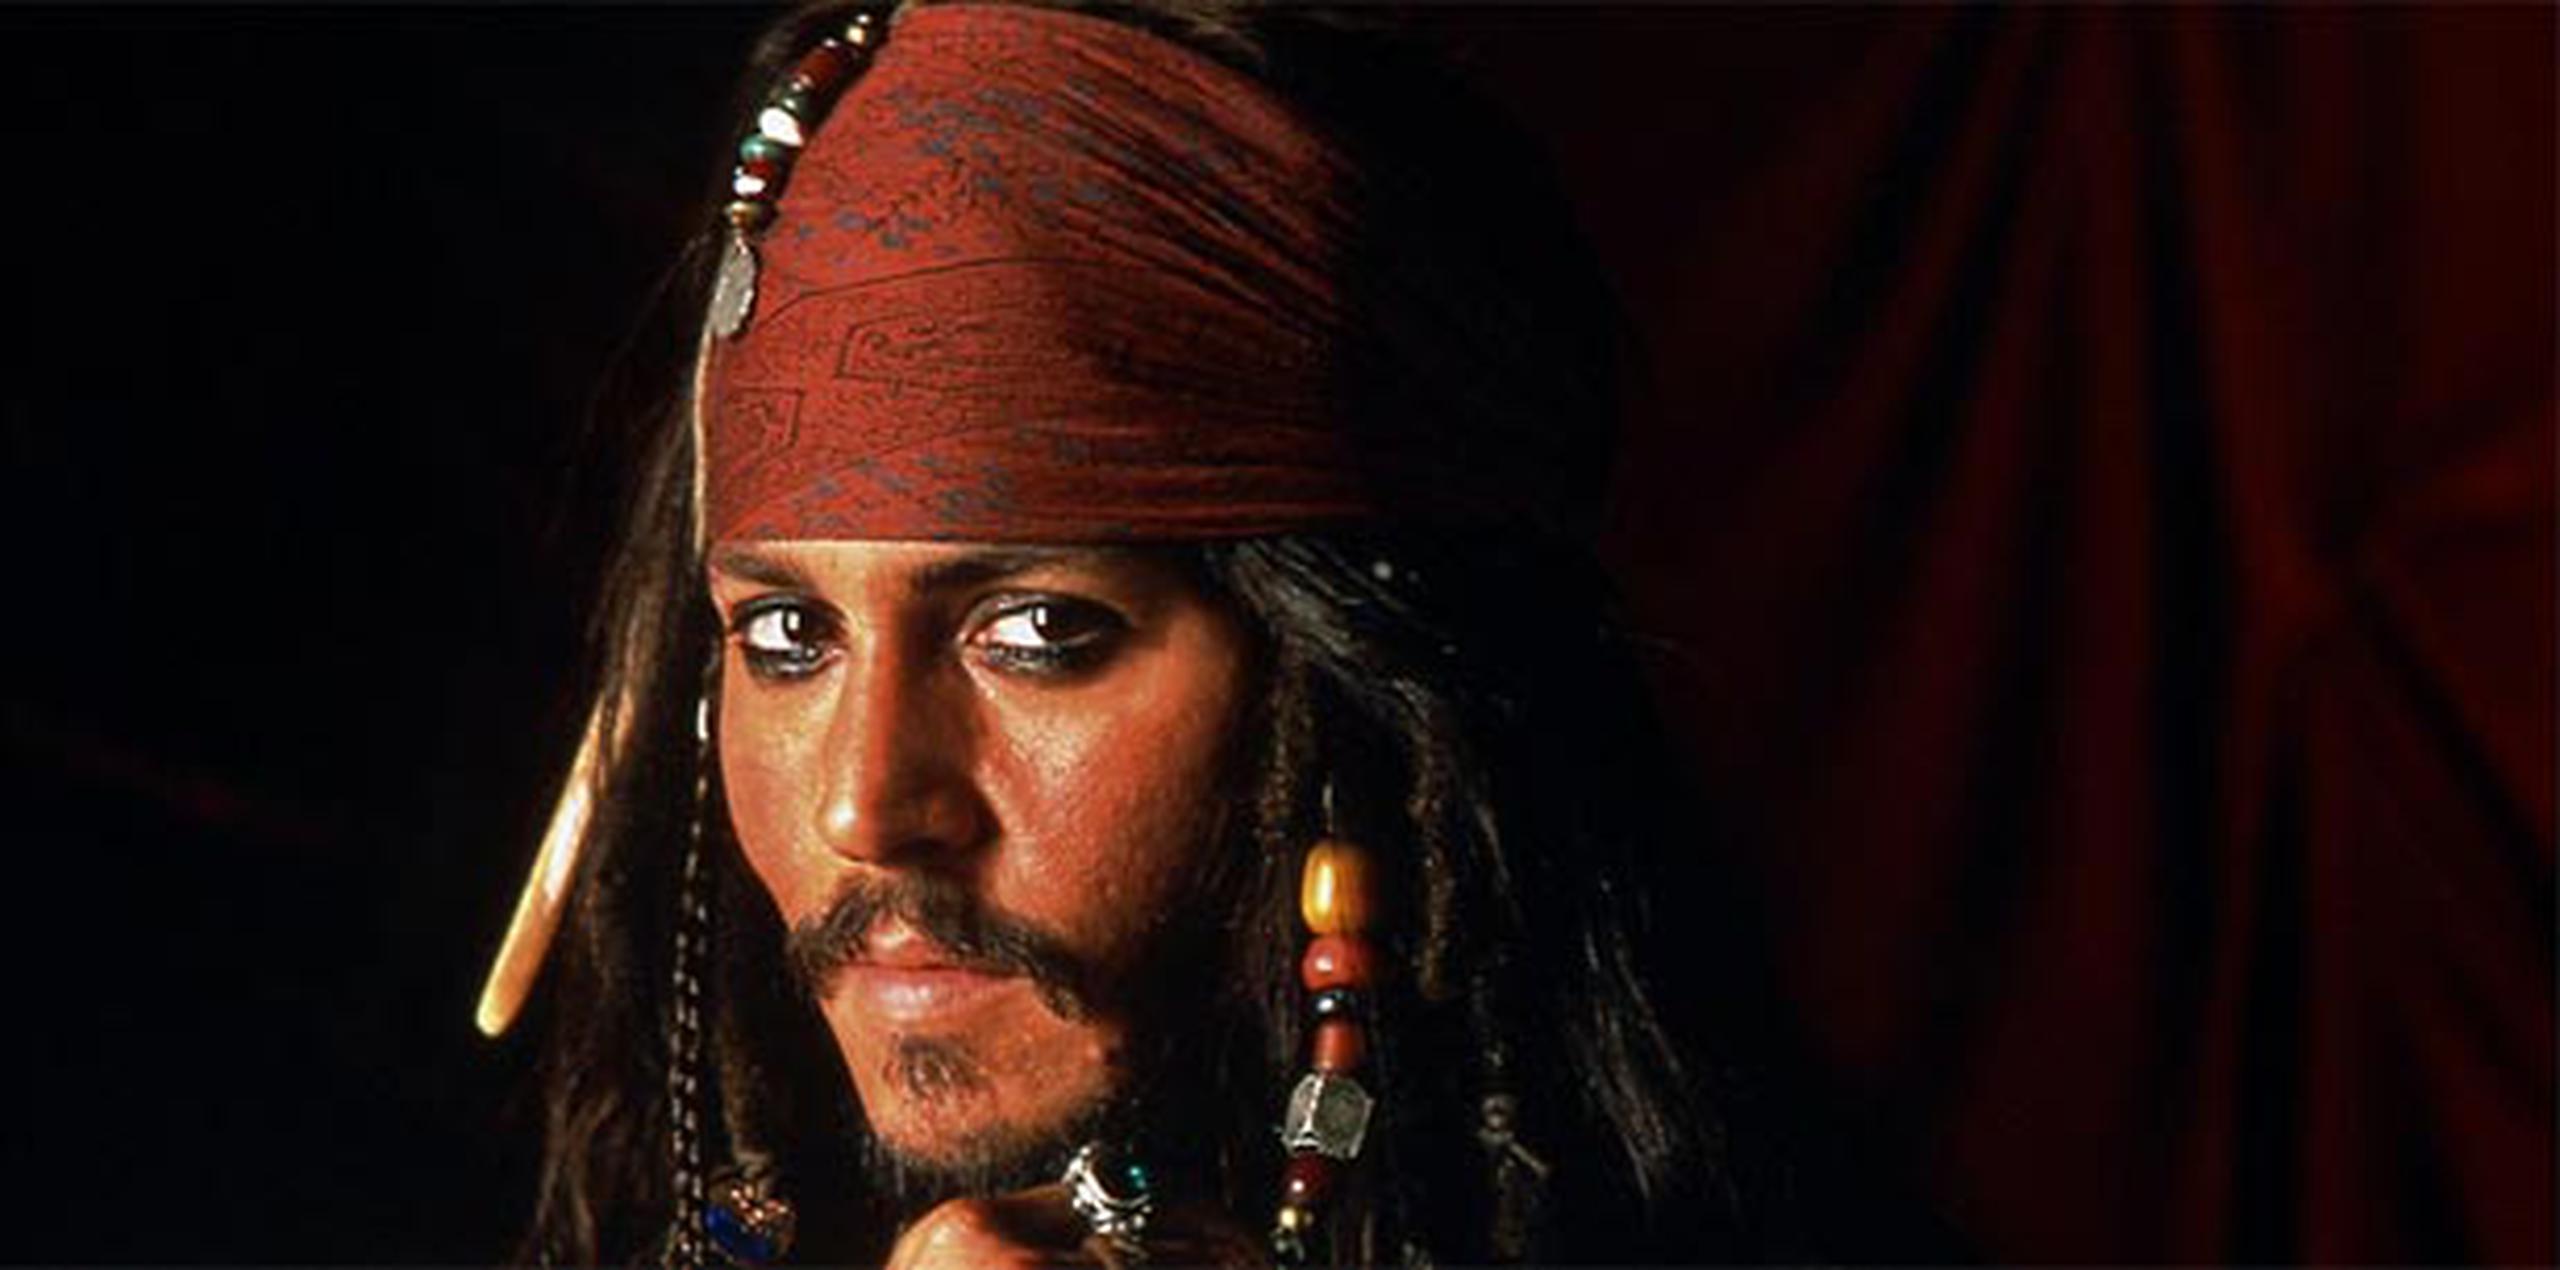 Al parecer, ya el “capitán Jack Sparrow” -personaje estrella de la saga interpretado por Johnny Depp- viene de camino. (Archivo)